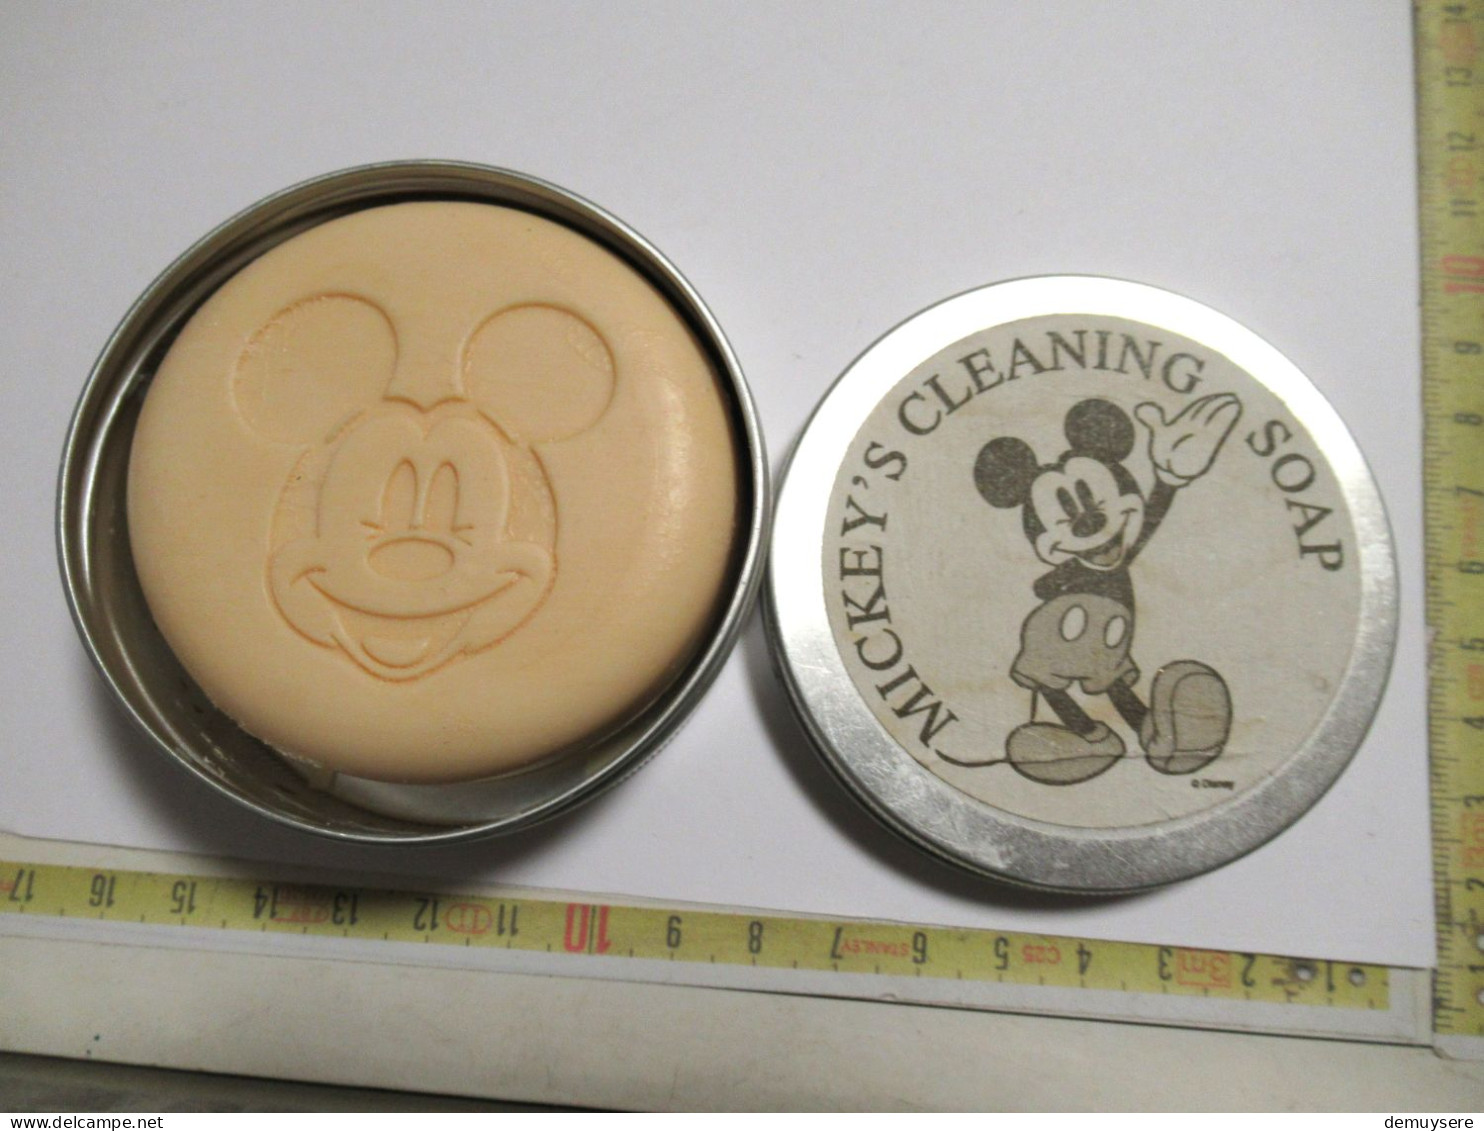 Lade 15 - Mickey4s Cleaning Soap - Schoonheidsproducten